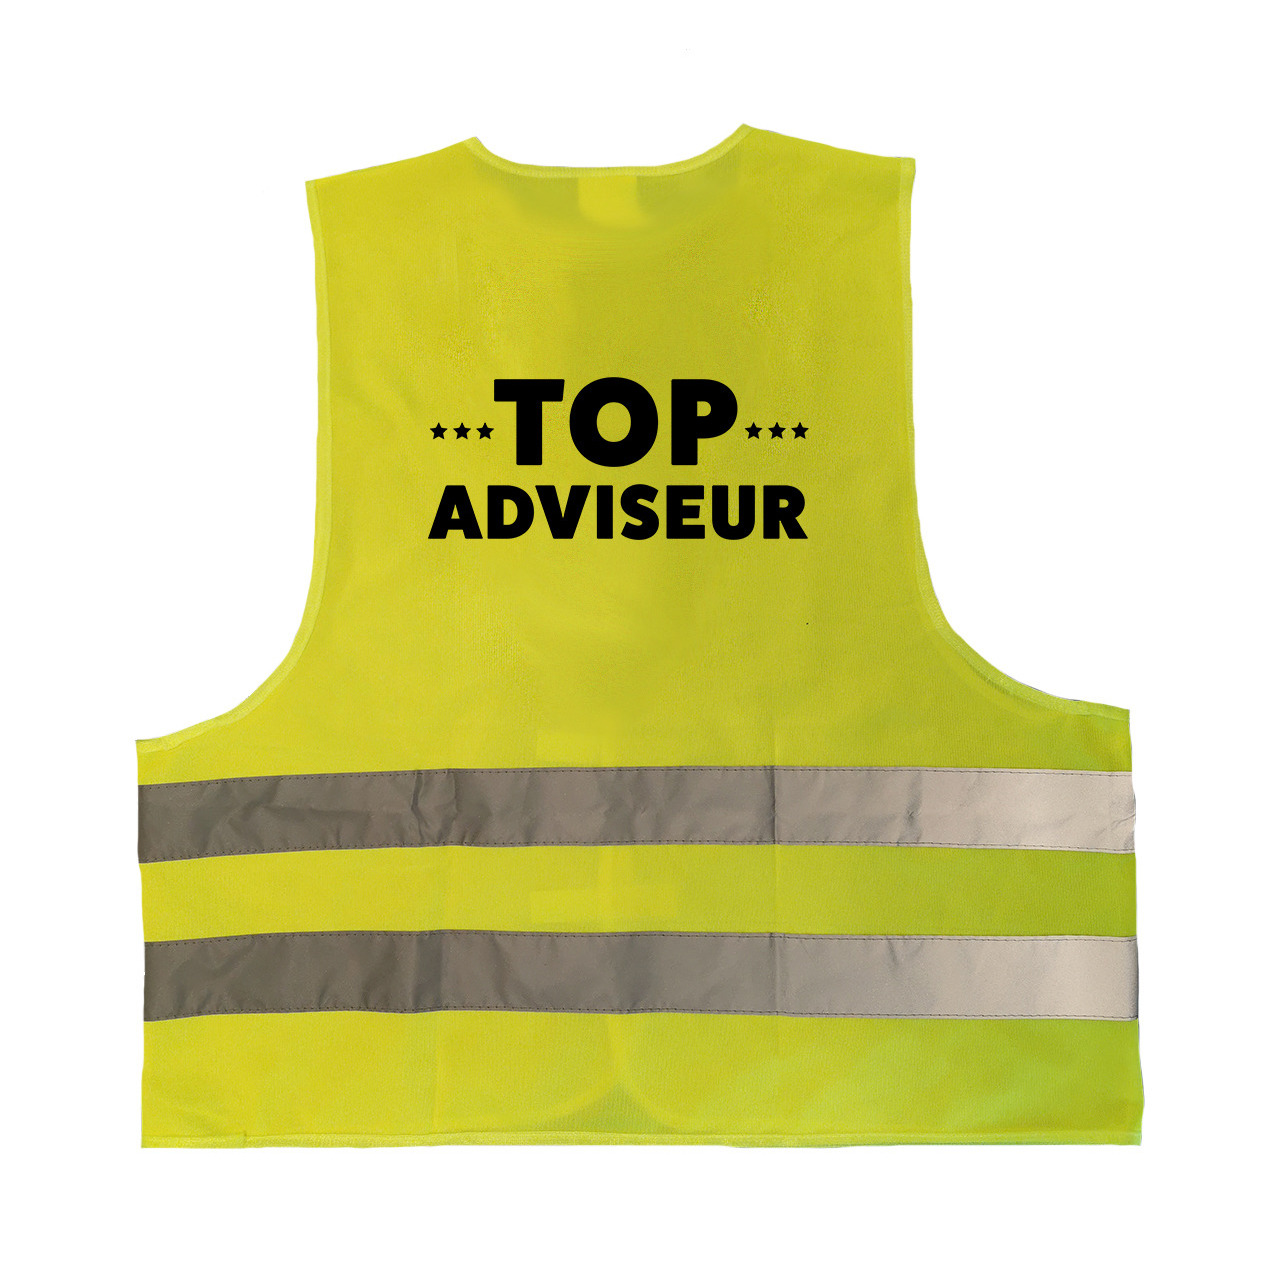 Top adviseur personeel vestje-hesje geel met reflecterende strepen voor volwassenen